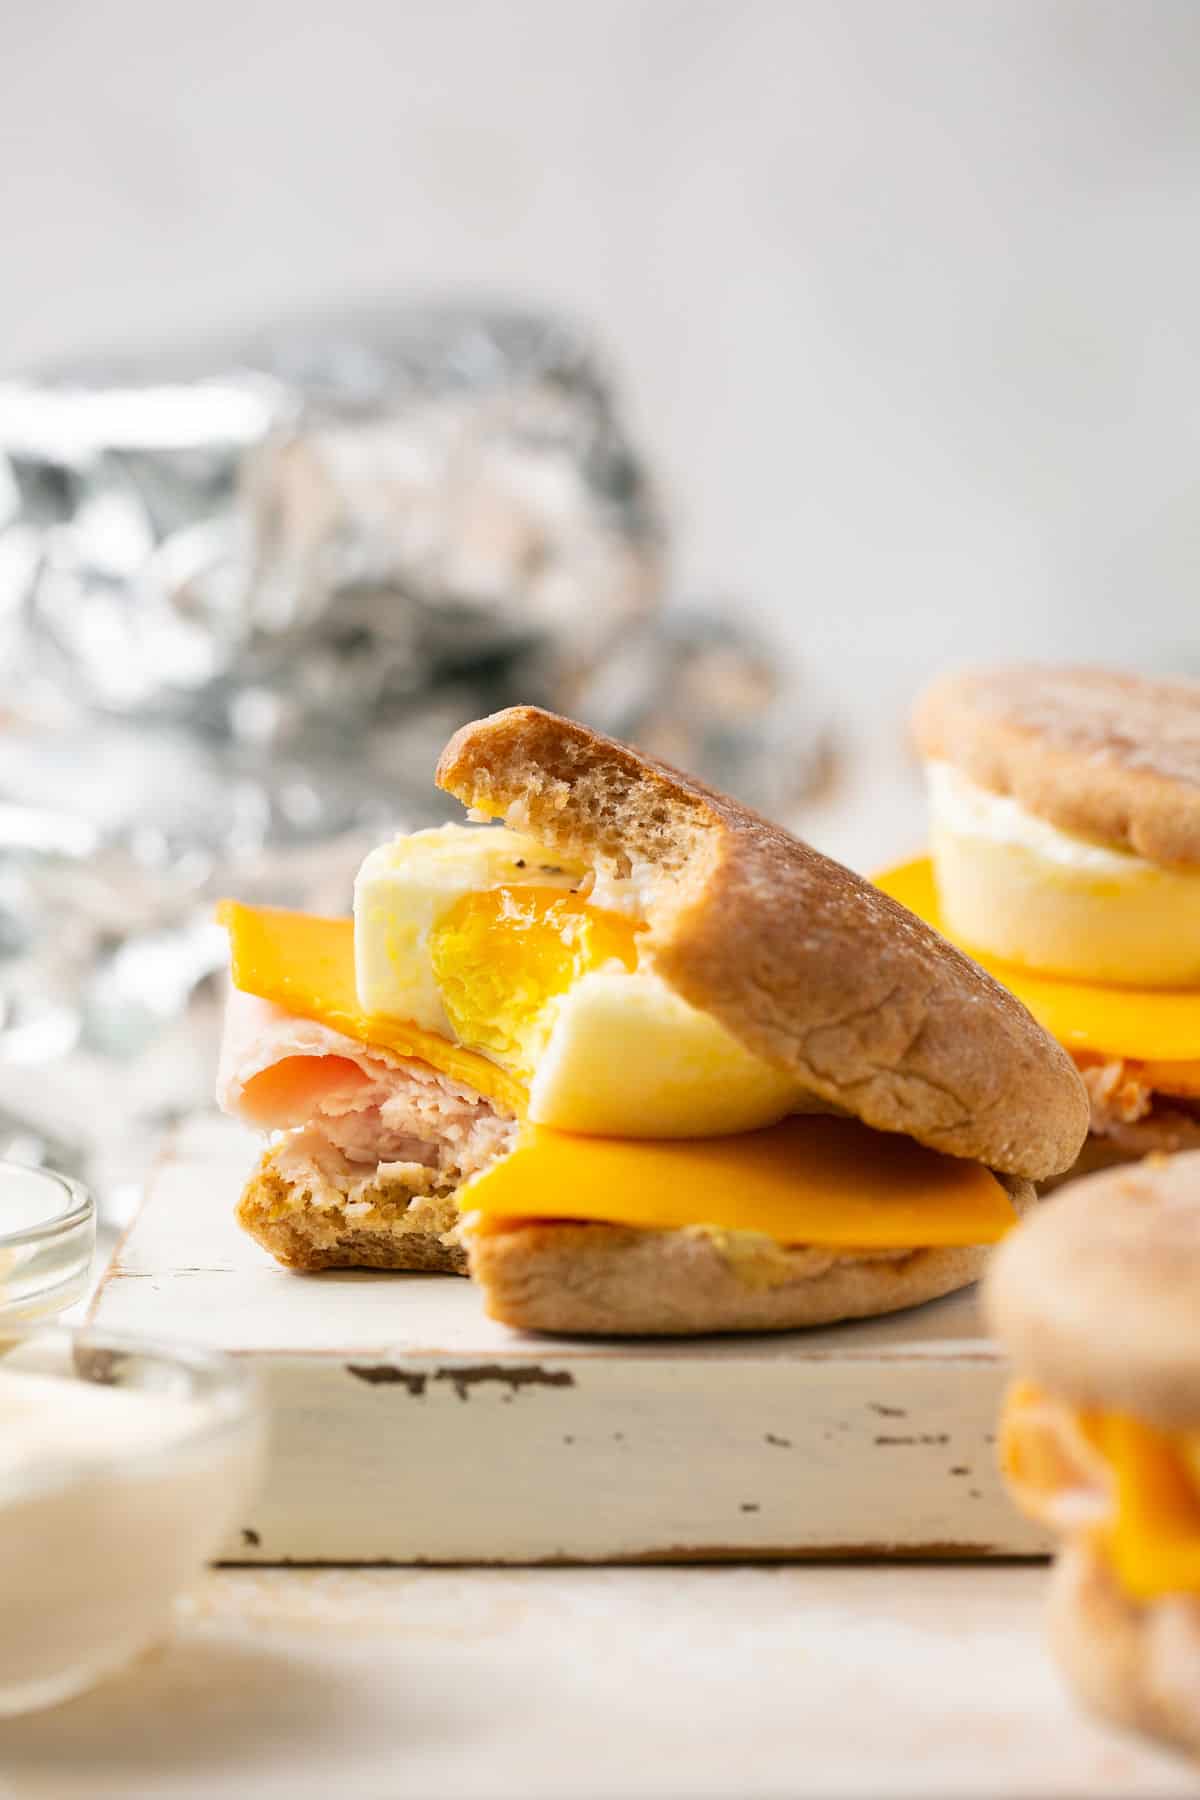 Healthy Breakfast Sandwich {Meal Prep Recipe} 